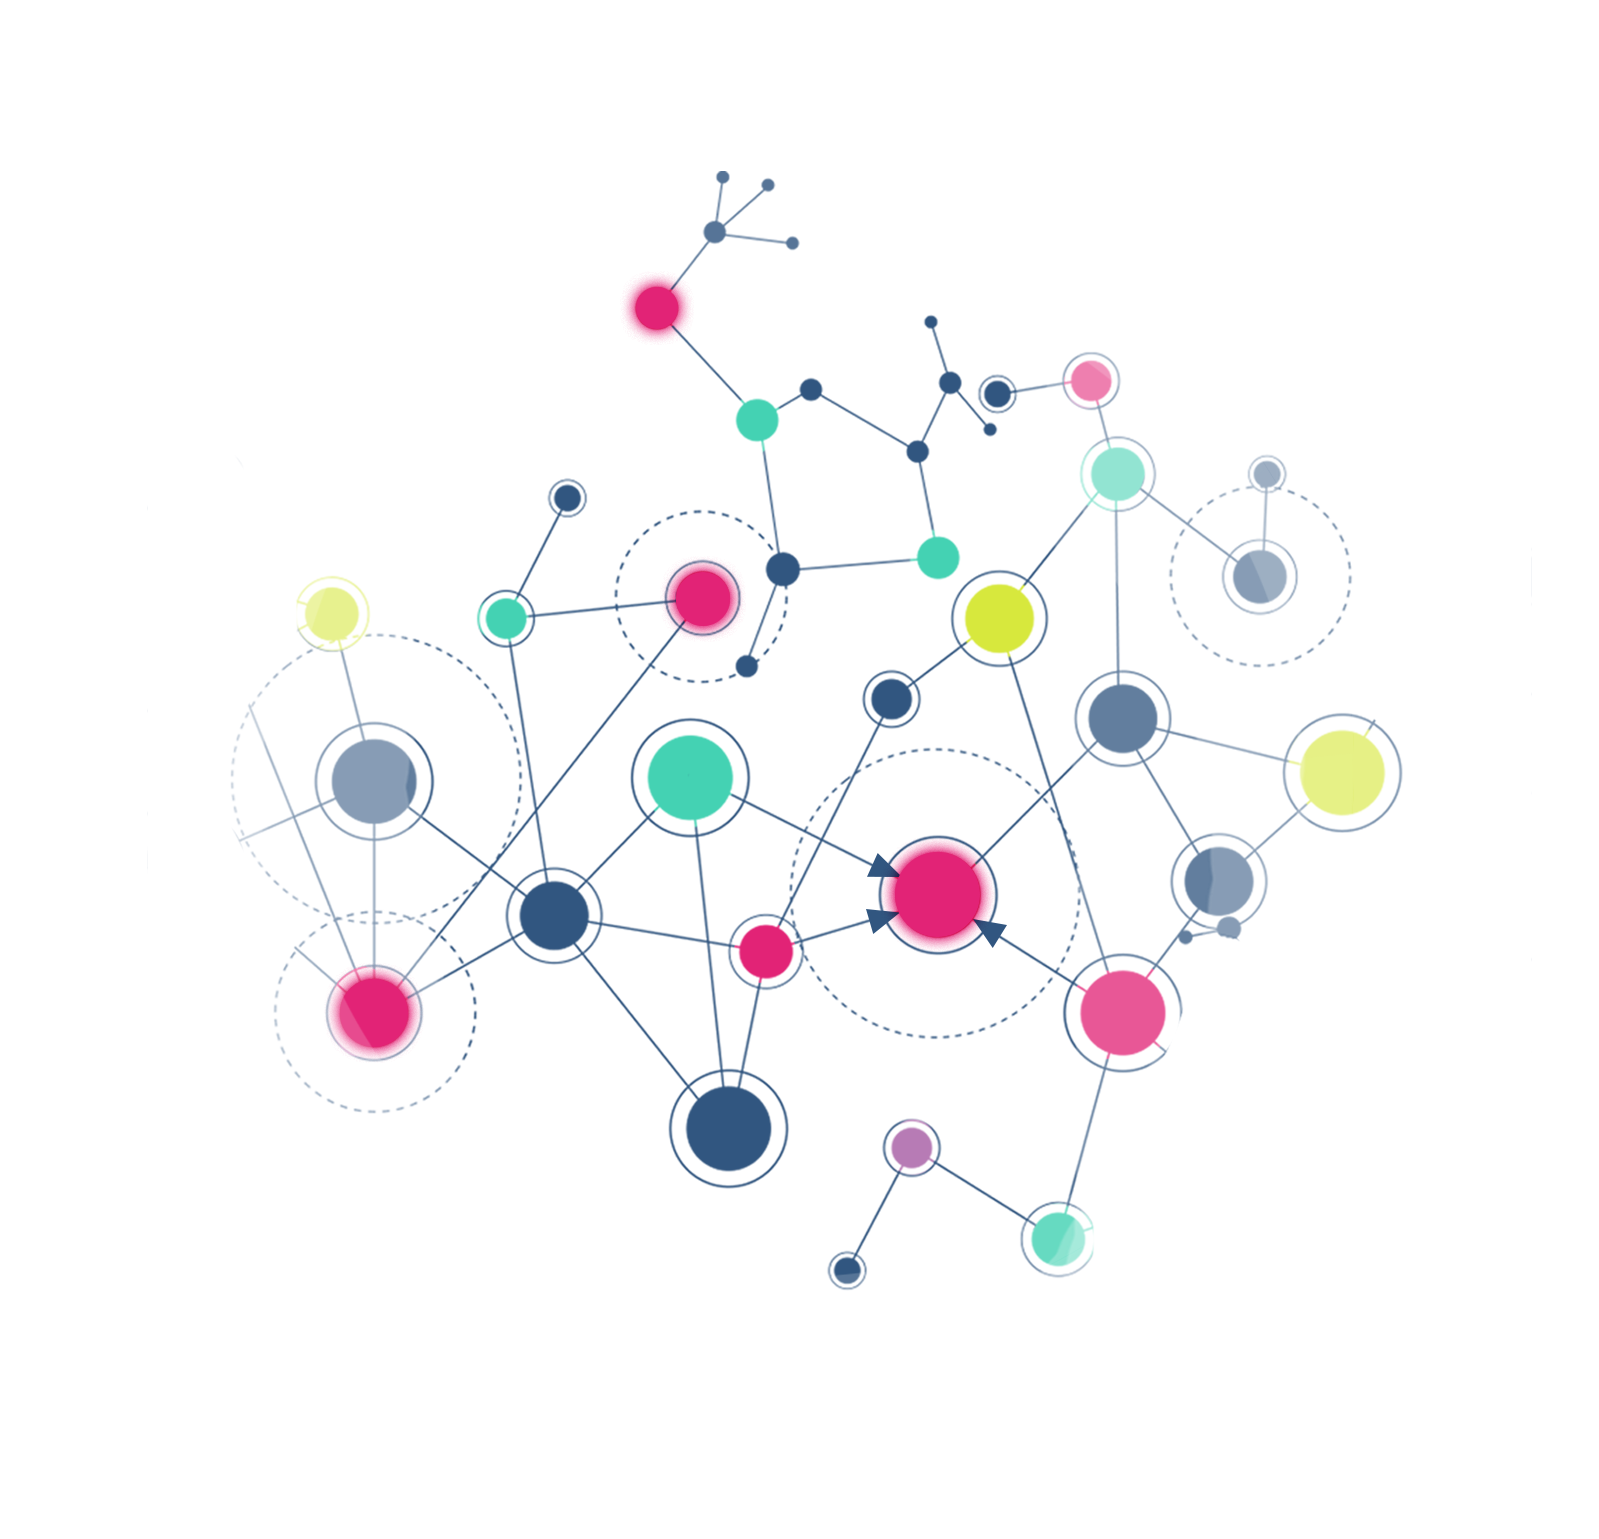 Ein intelligentes Netz, dargestellt durch verschiedene farbige Punkte und verbundene Linien